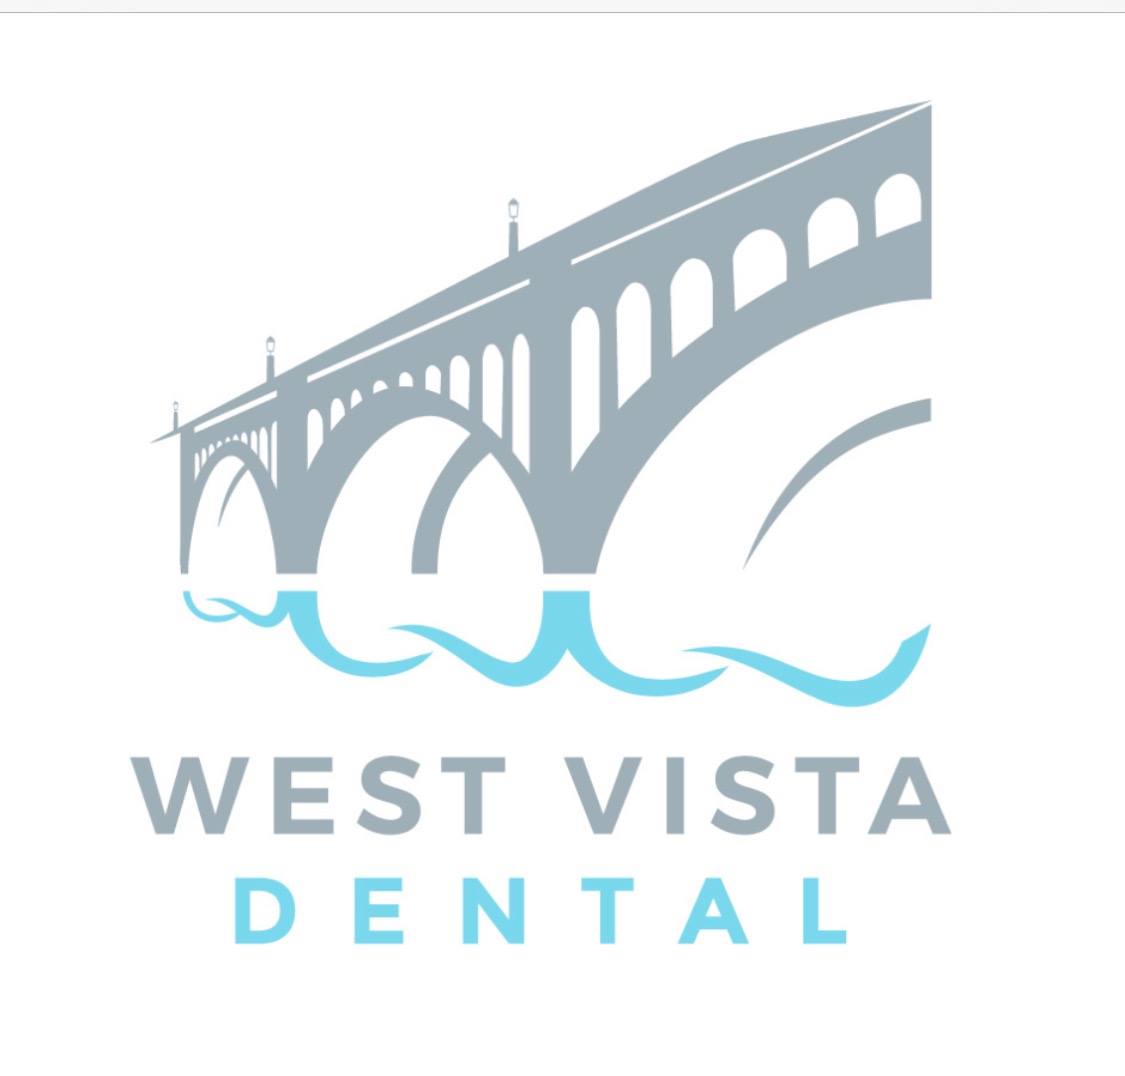 Business logo of West Vista Dental - Dr. Kenley Loftis and Dr. Drew Farmer